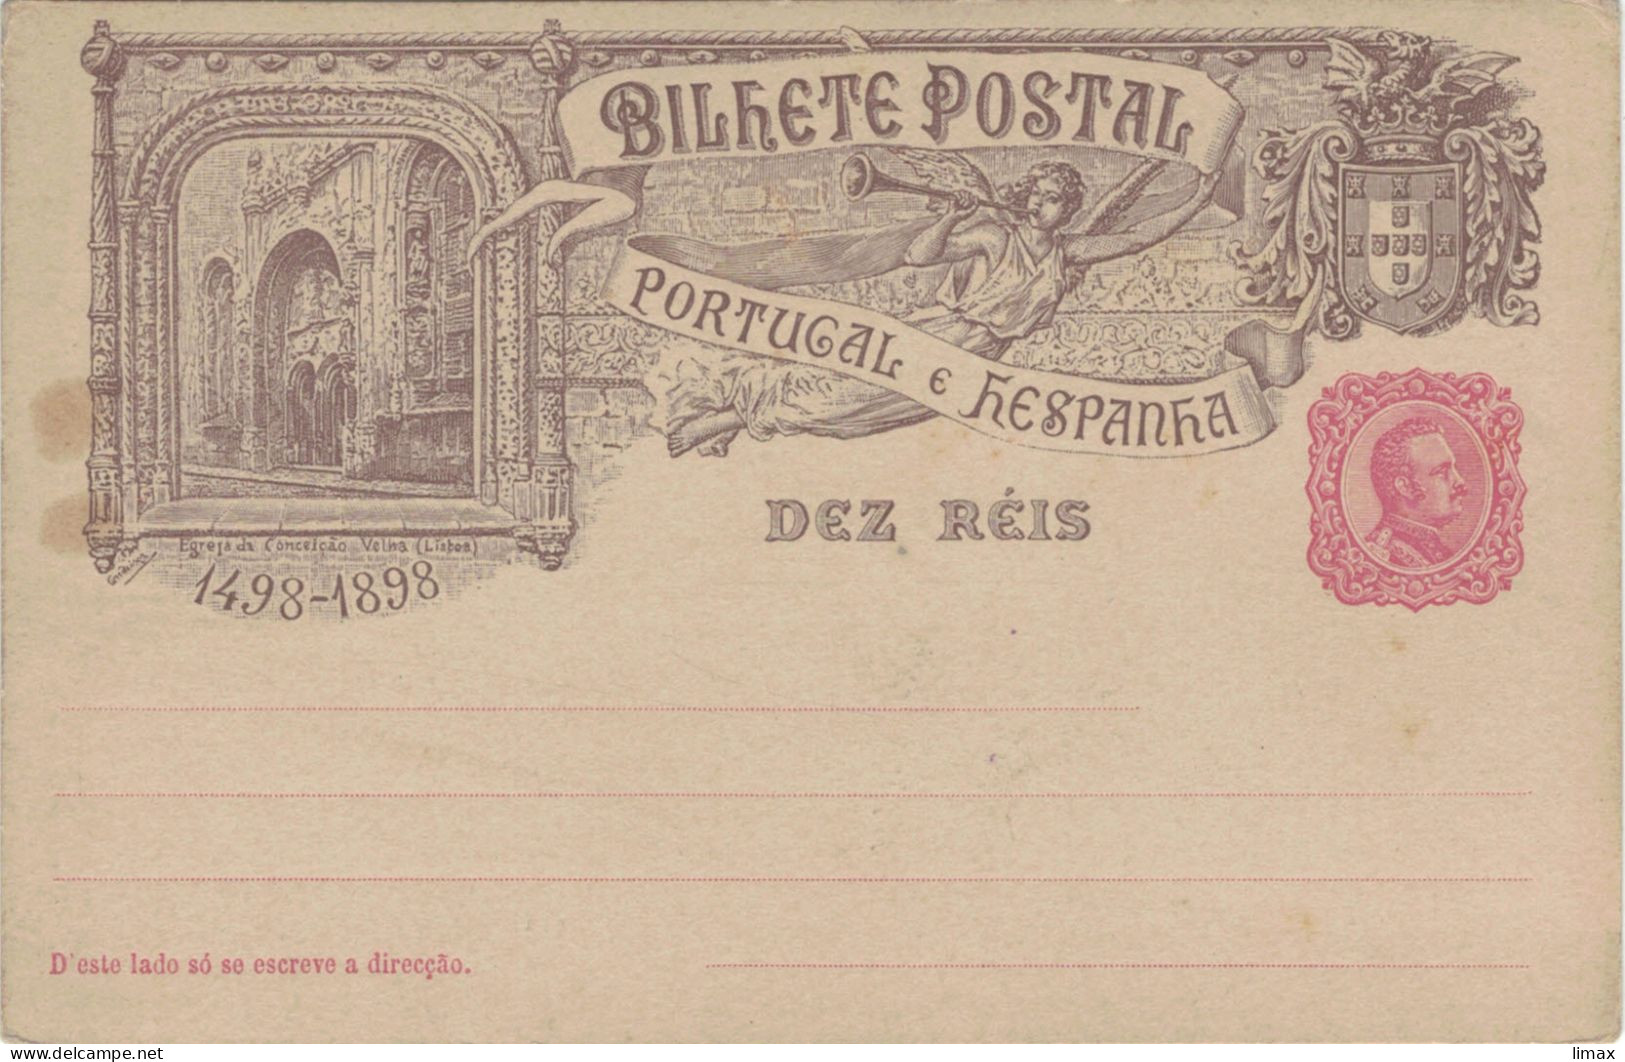 Bilhete Ganzsache Portugal & Hespanha Lissabon Igreja Da Conceição Velha - Postal Stationery